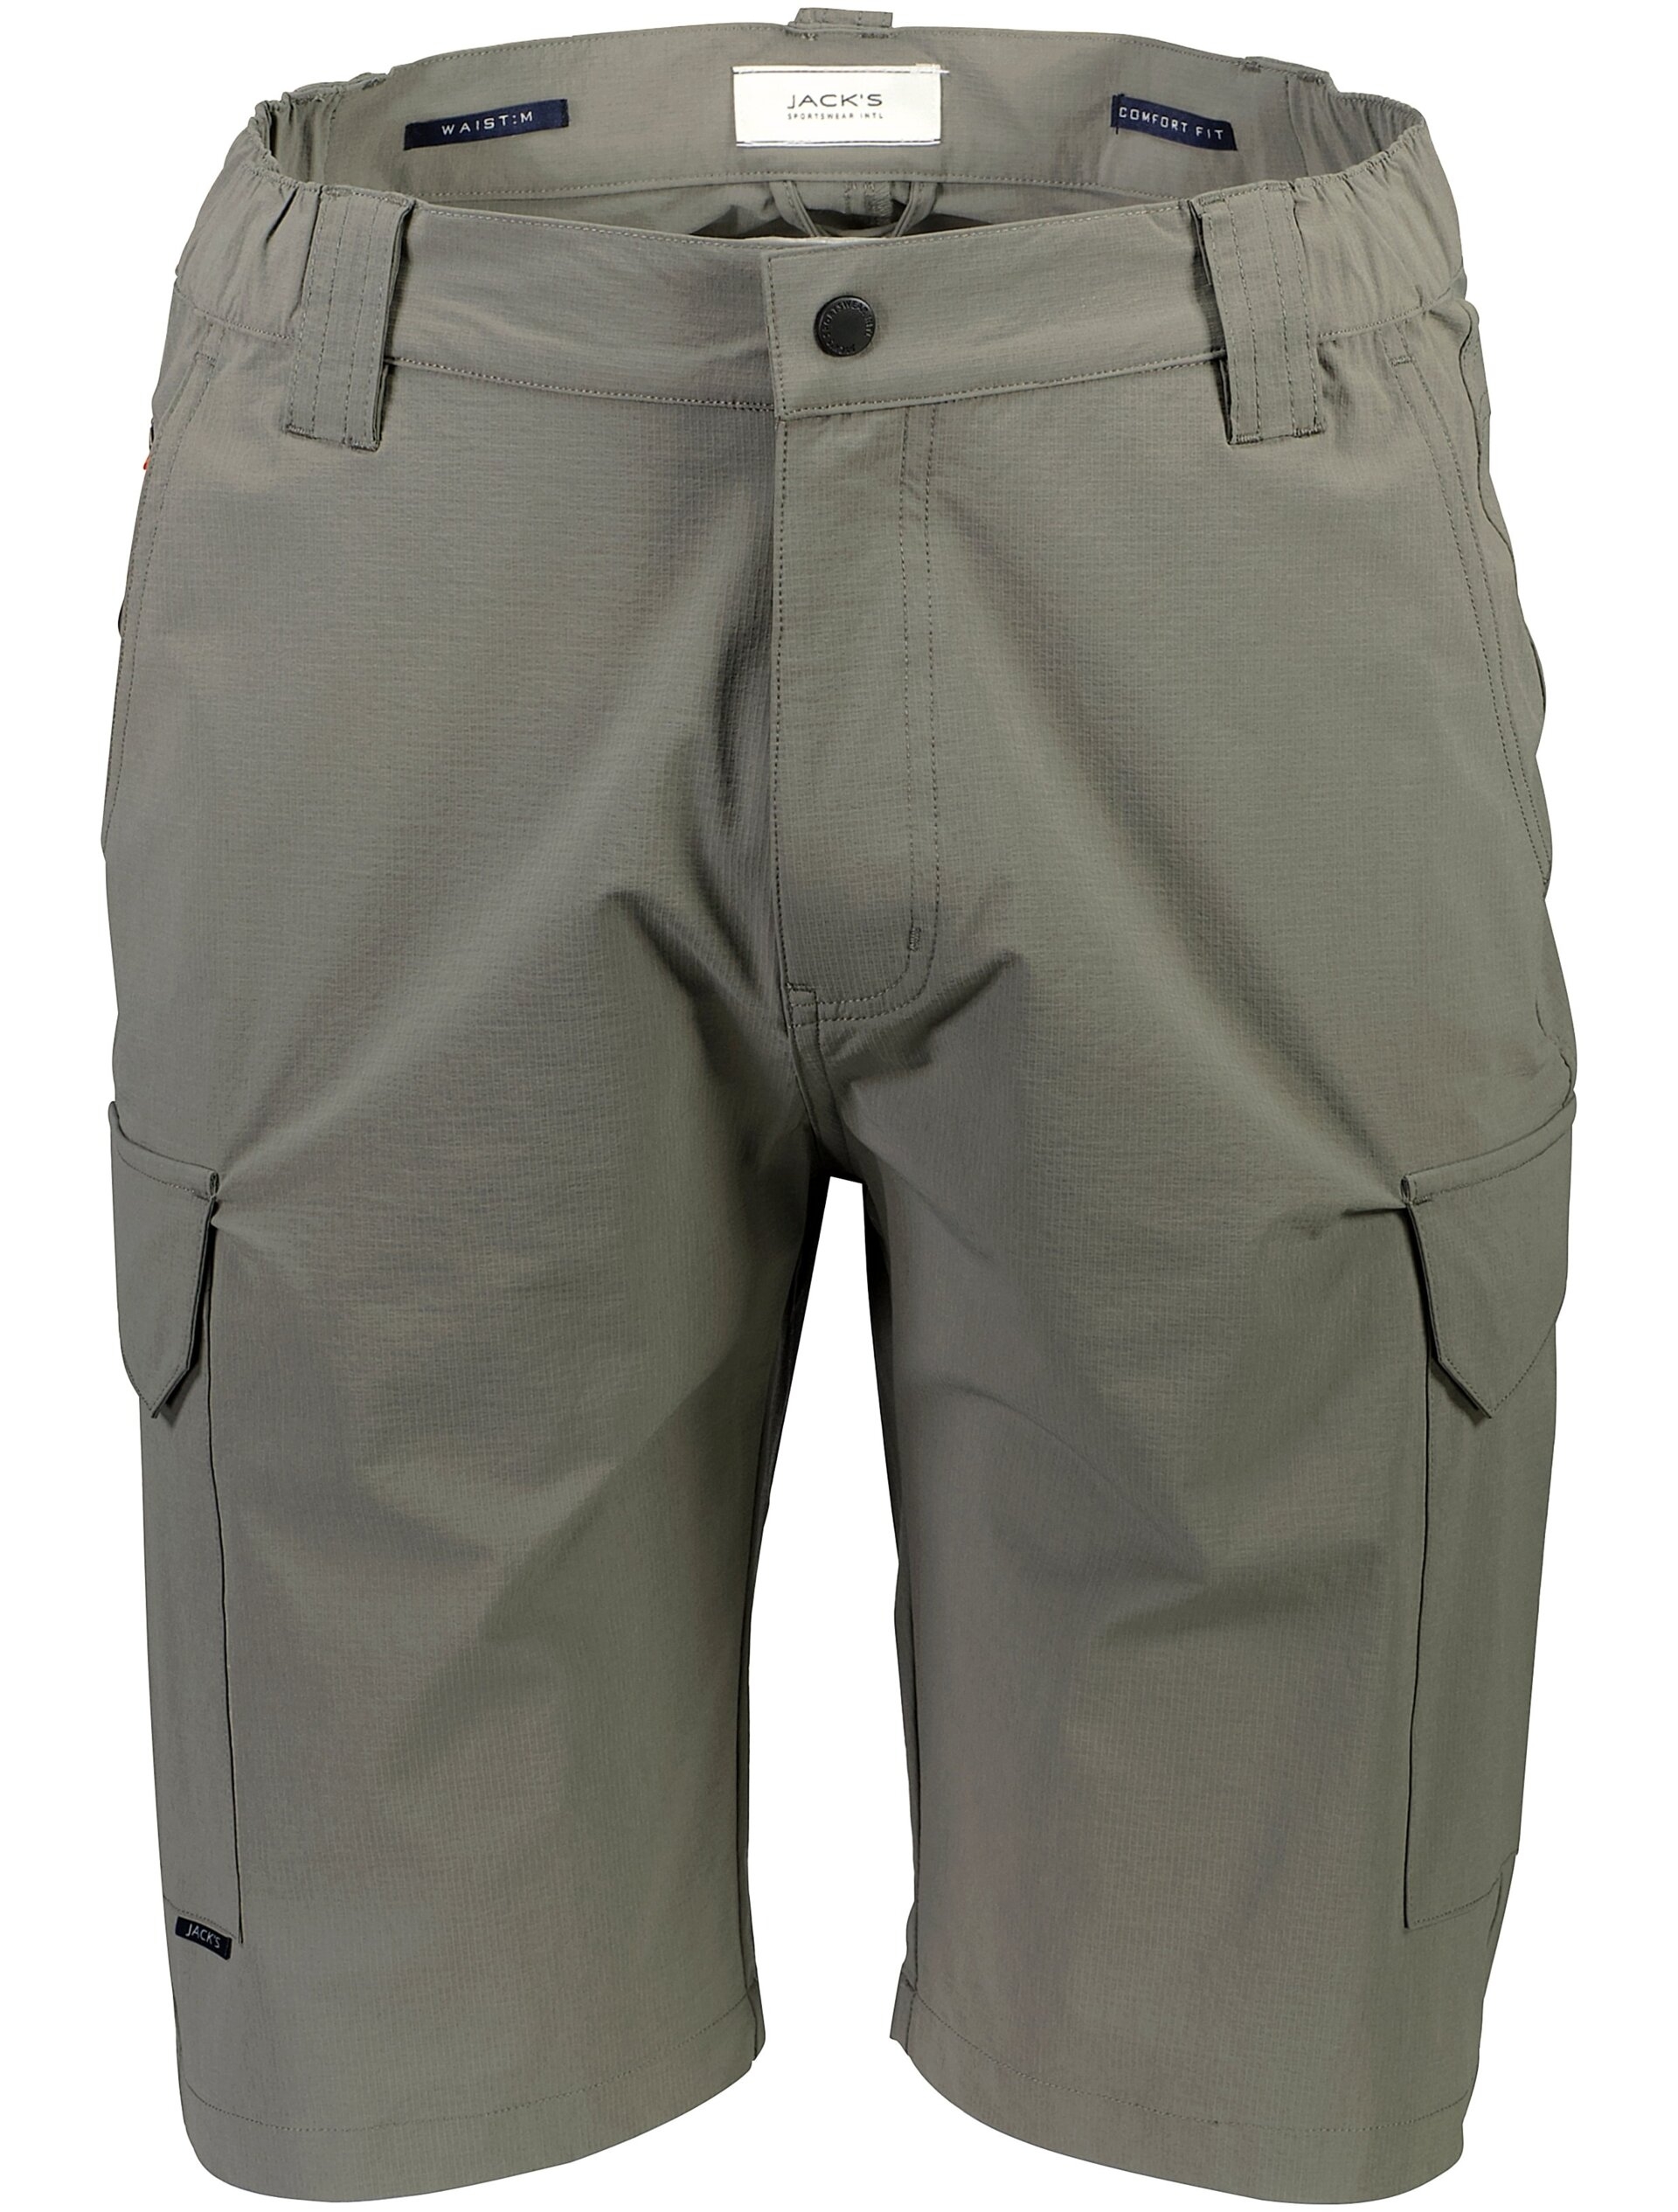 Morgan Cargo shorts grøn / lt army